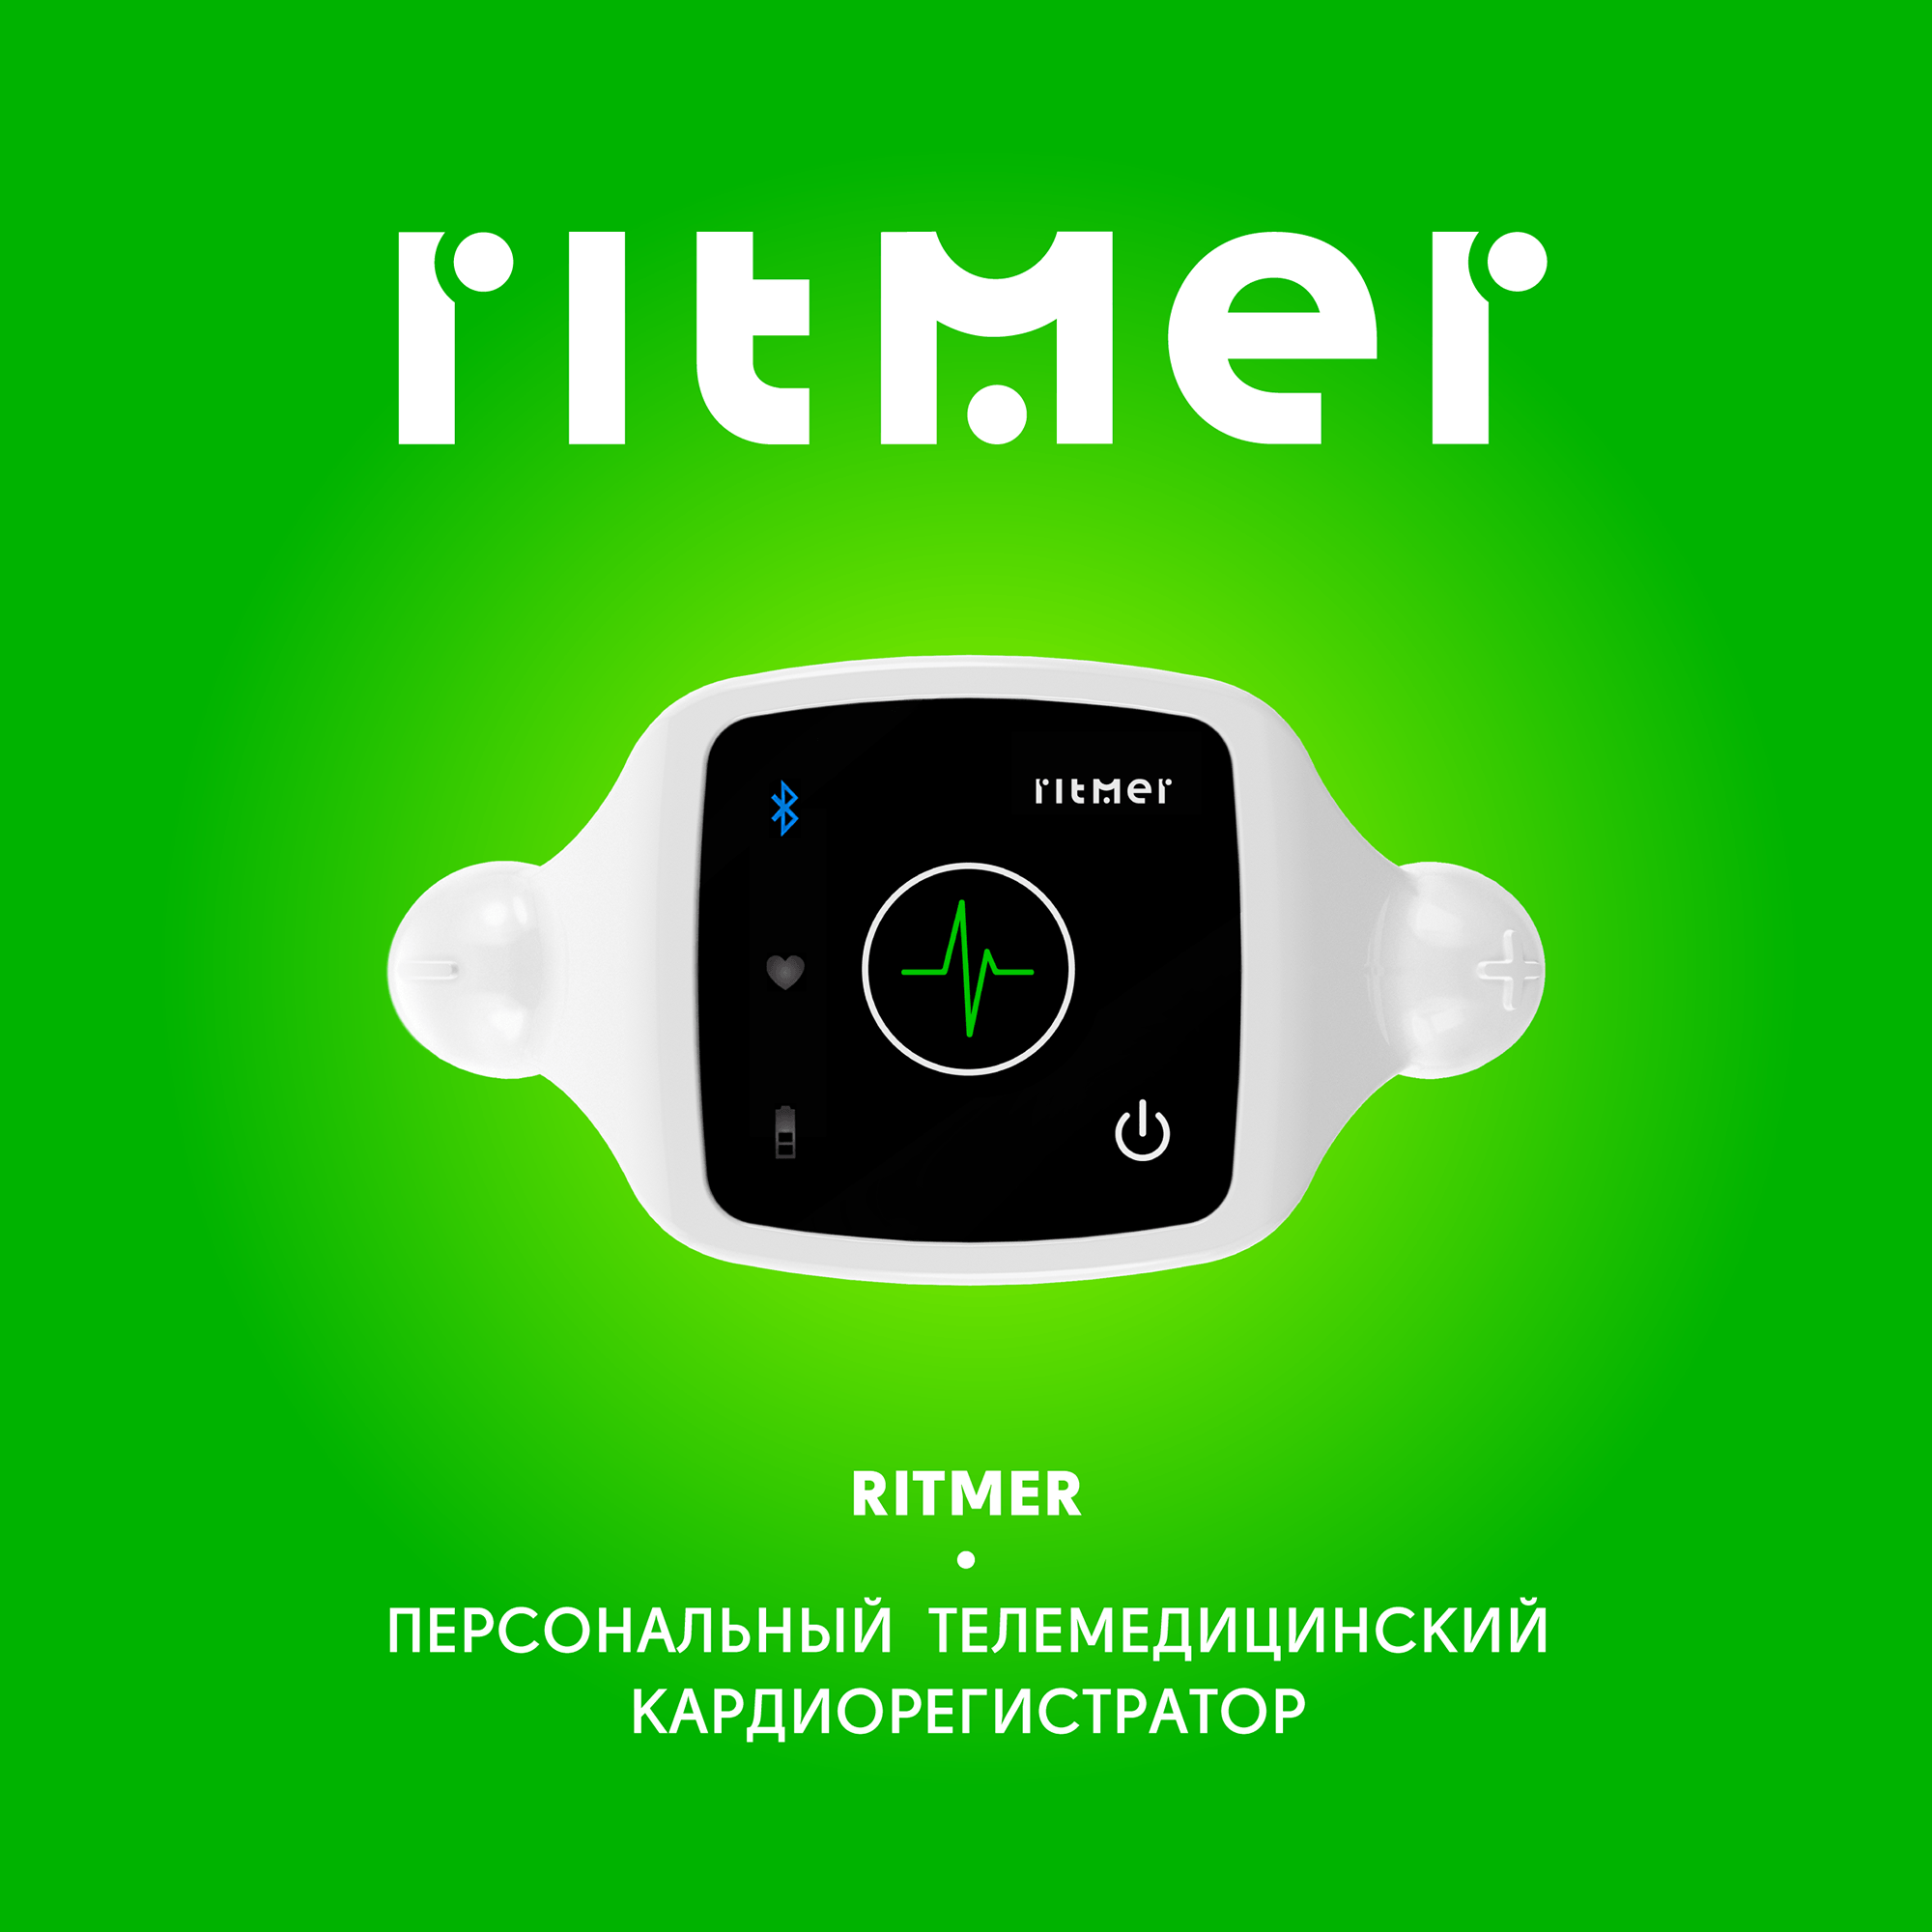 RITMER个人心电图随身健康监测仪器LOGO设计品牌形象设计-上海医疗健康品牌logo设计公司